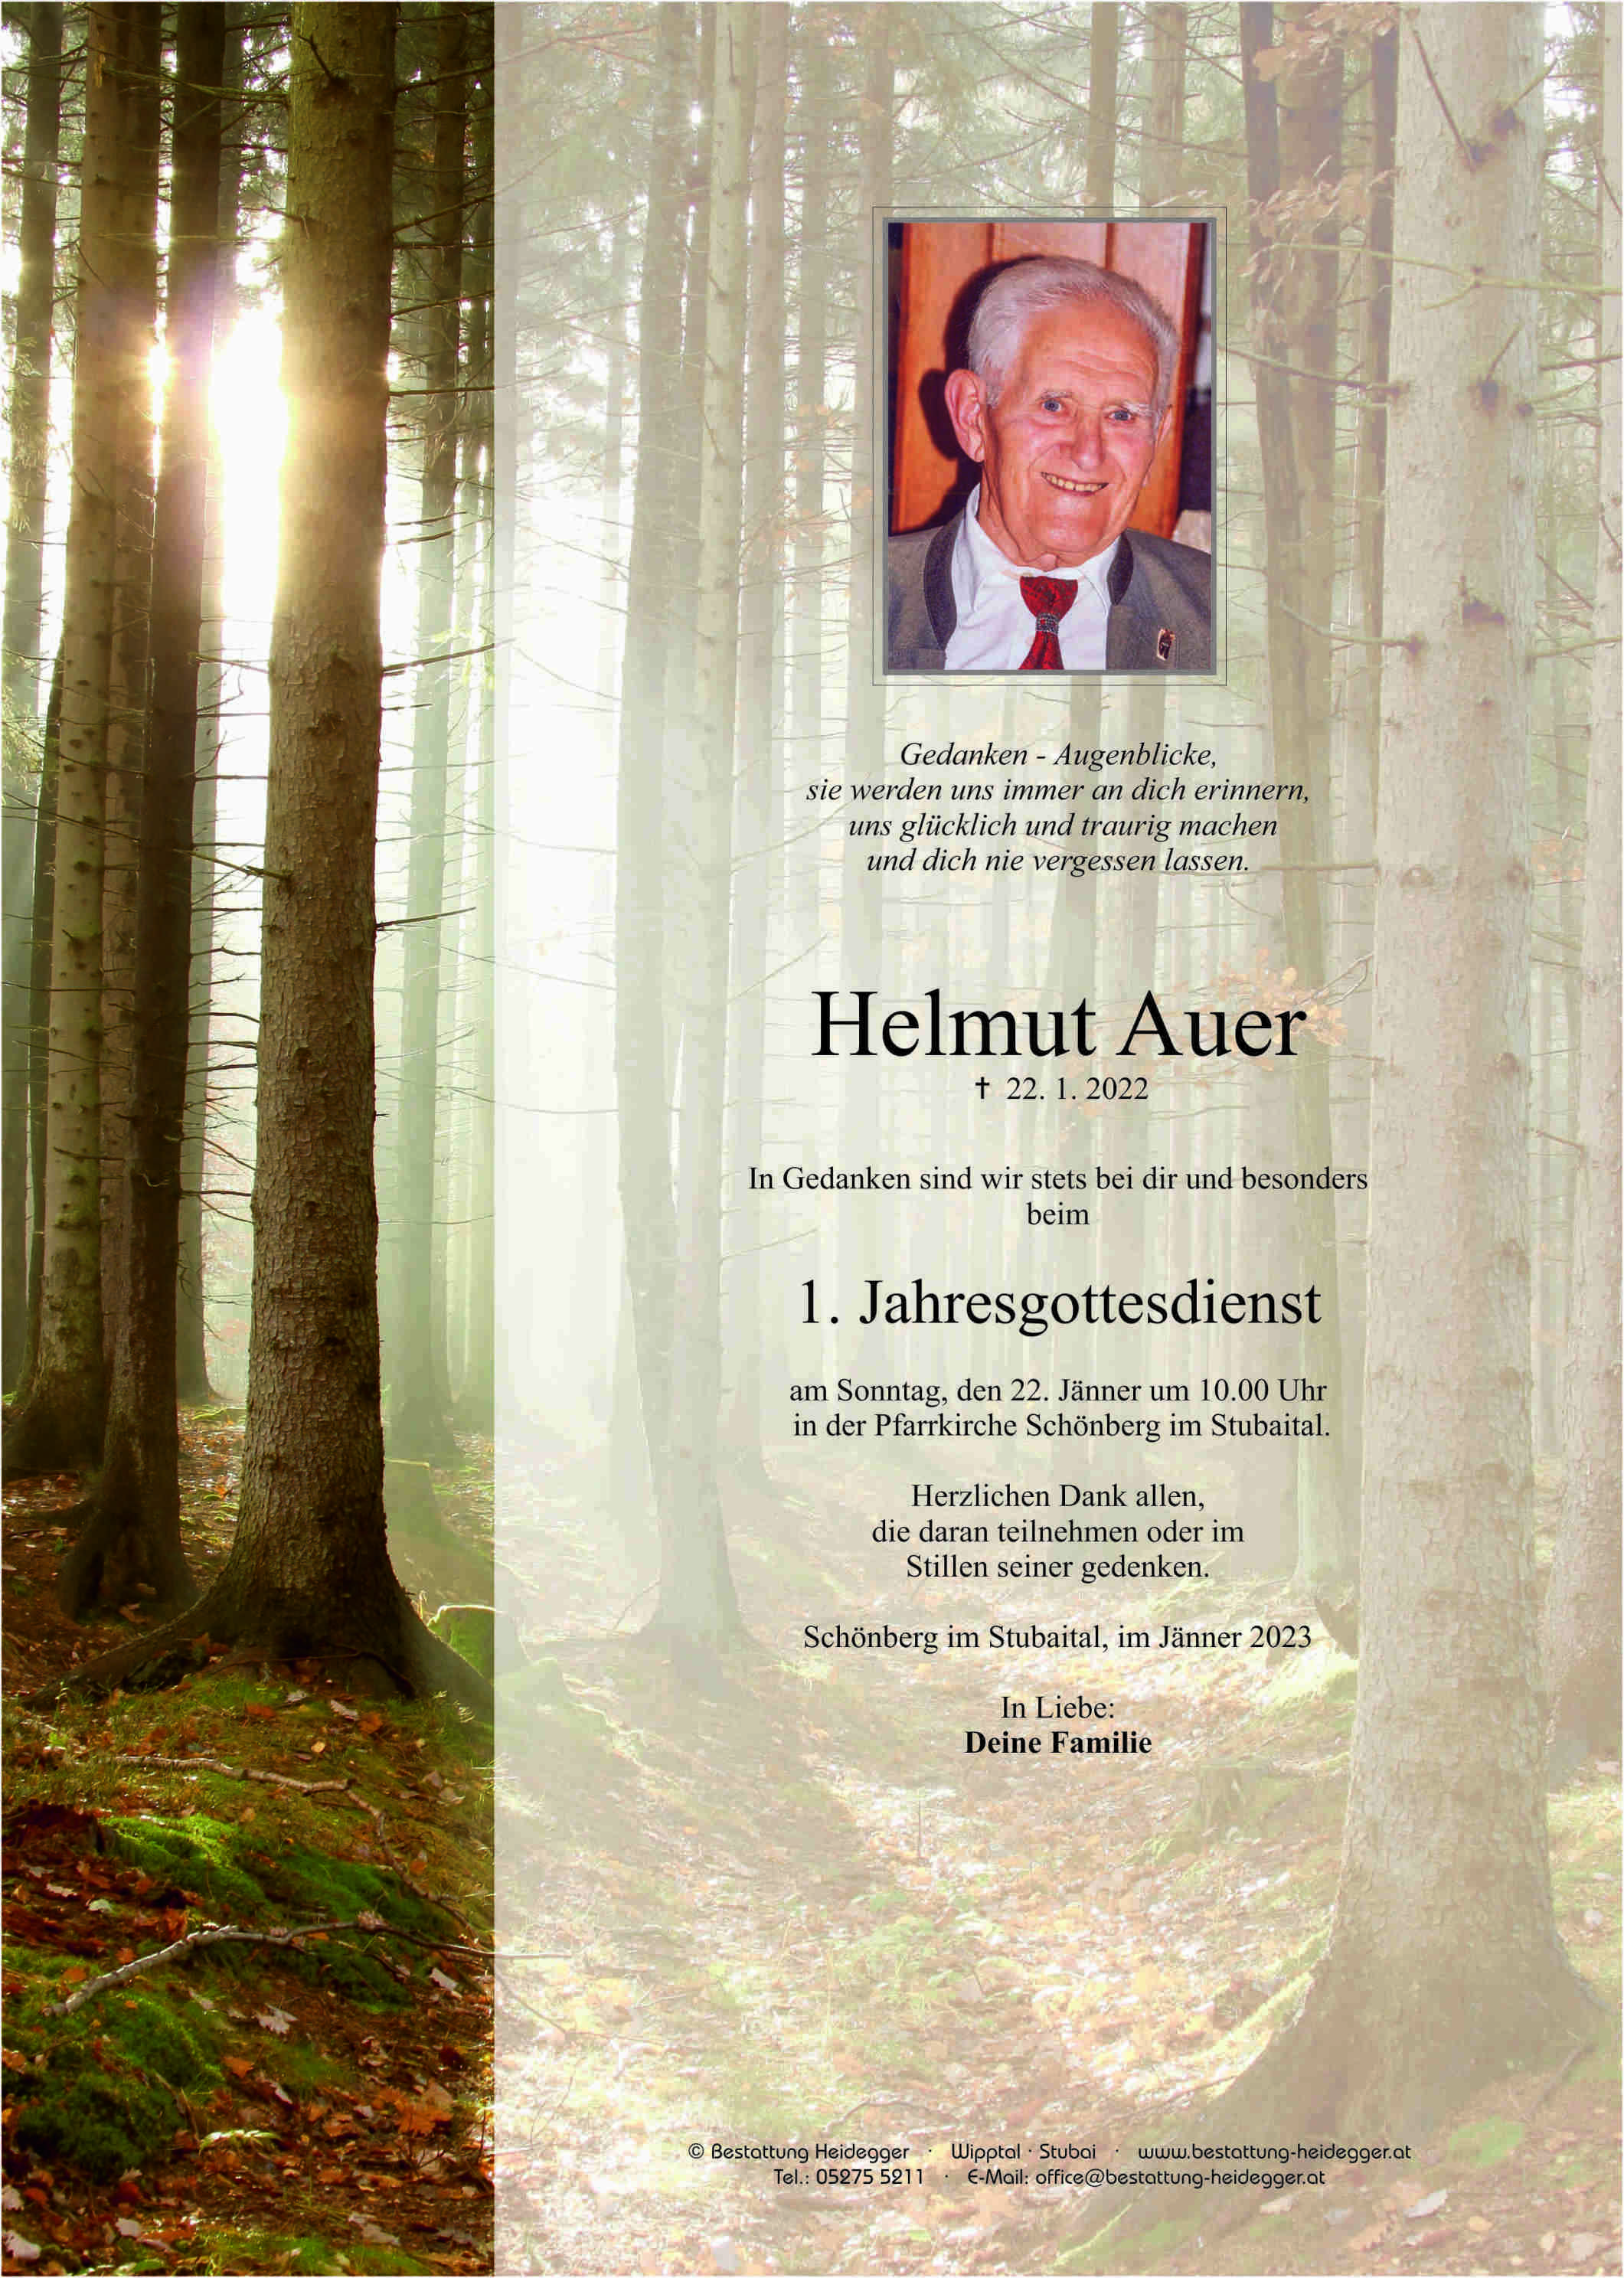 Helmut Auer